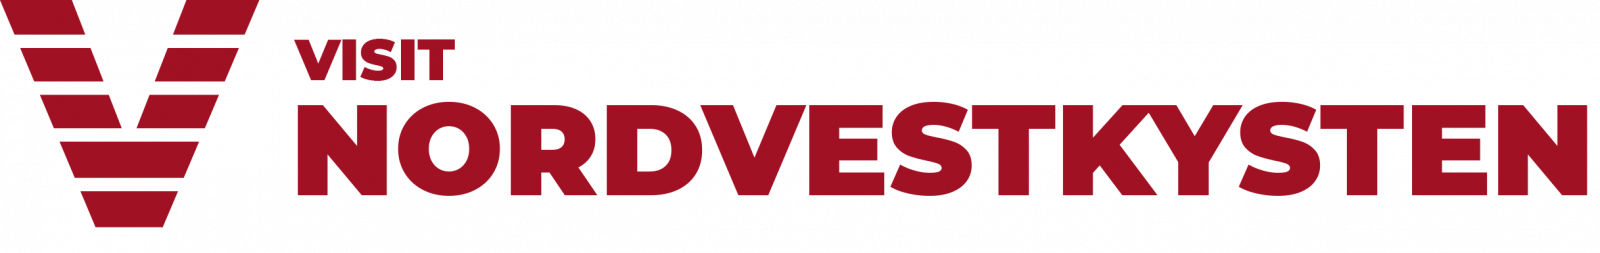 Logo-nordvestkysten-visit-rød